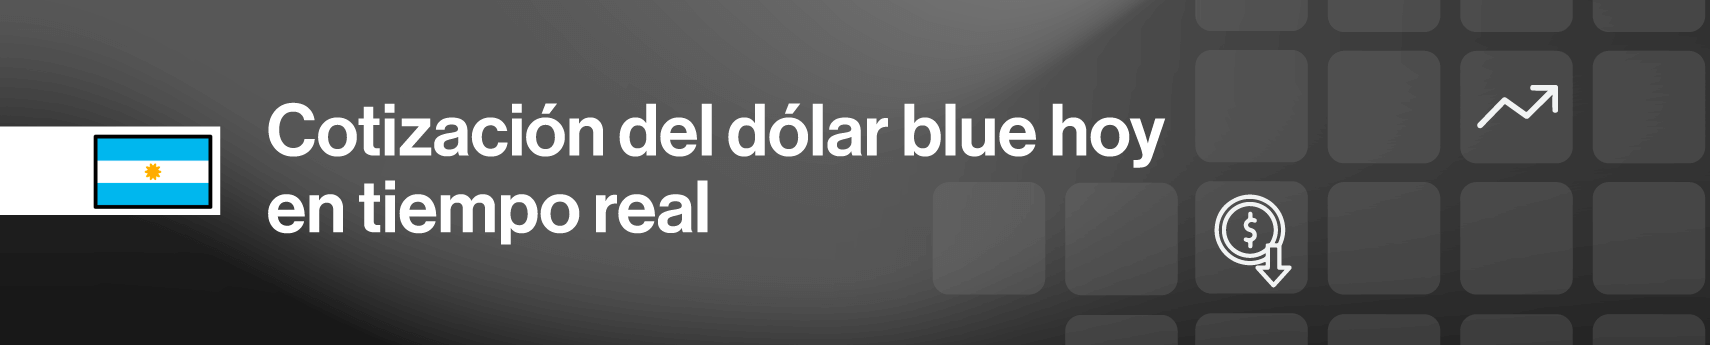 Cotización del dólar blue hoy en tiempo real